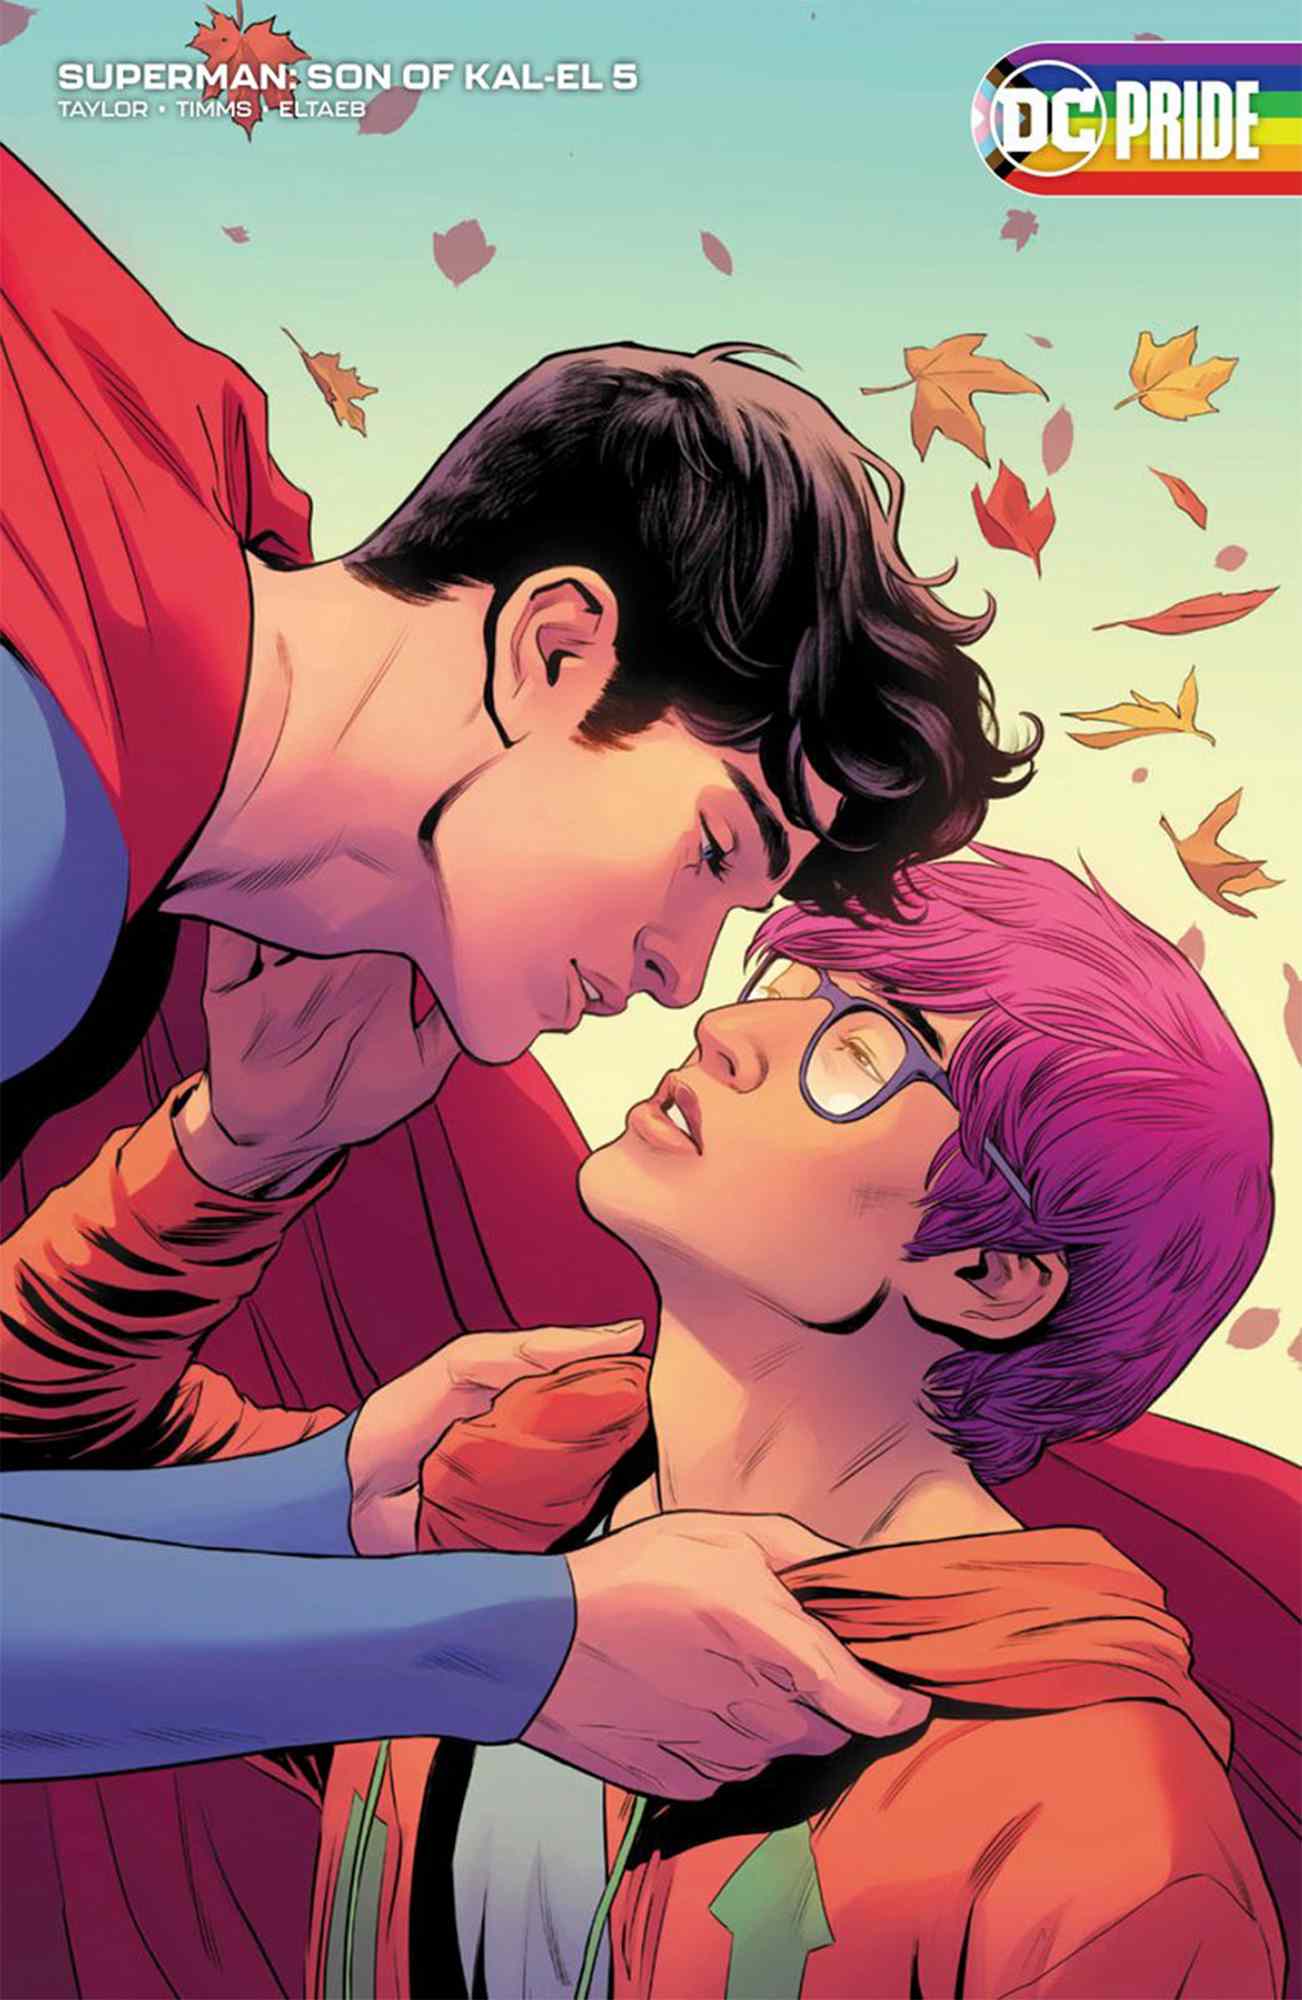 Superman Muncul Sebagai Biseksual di Buku Komik Baru: 'Semua Orang Pantas Melihat Diri Sendiri' di Heroes